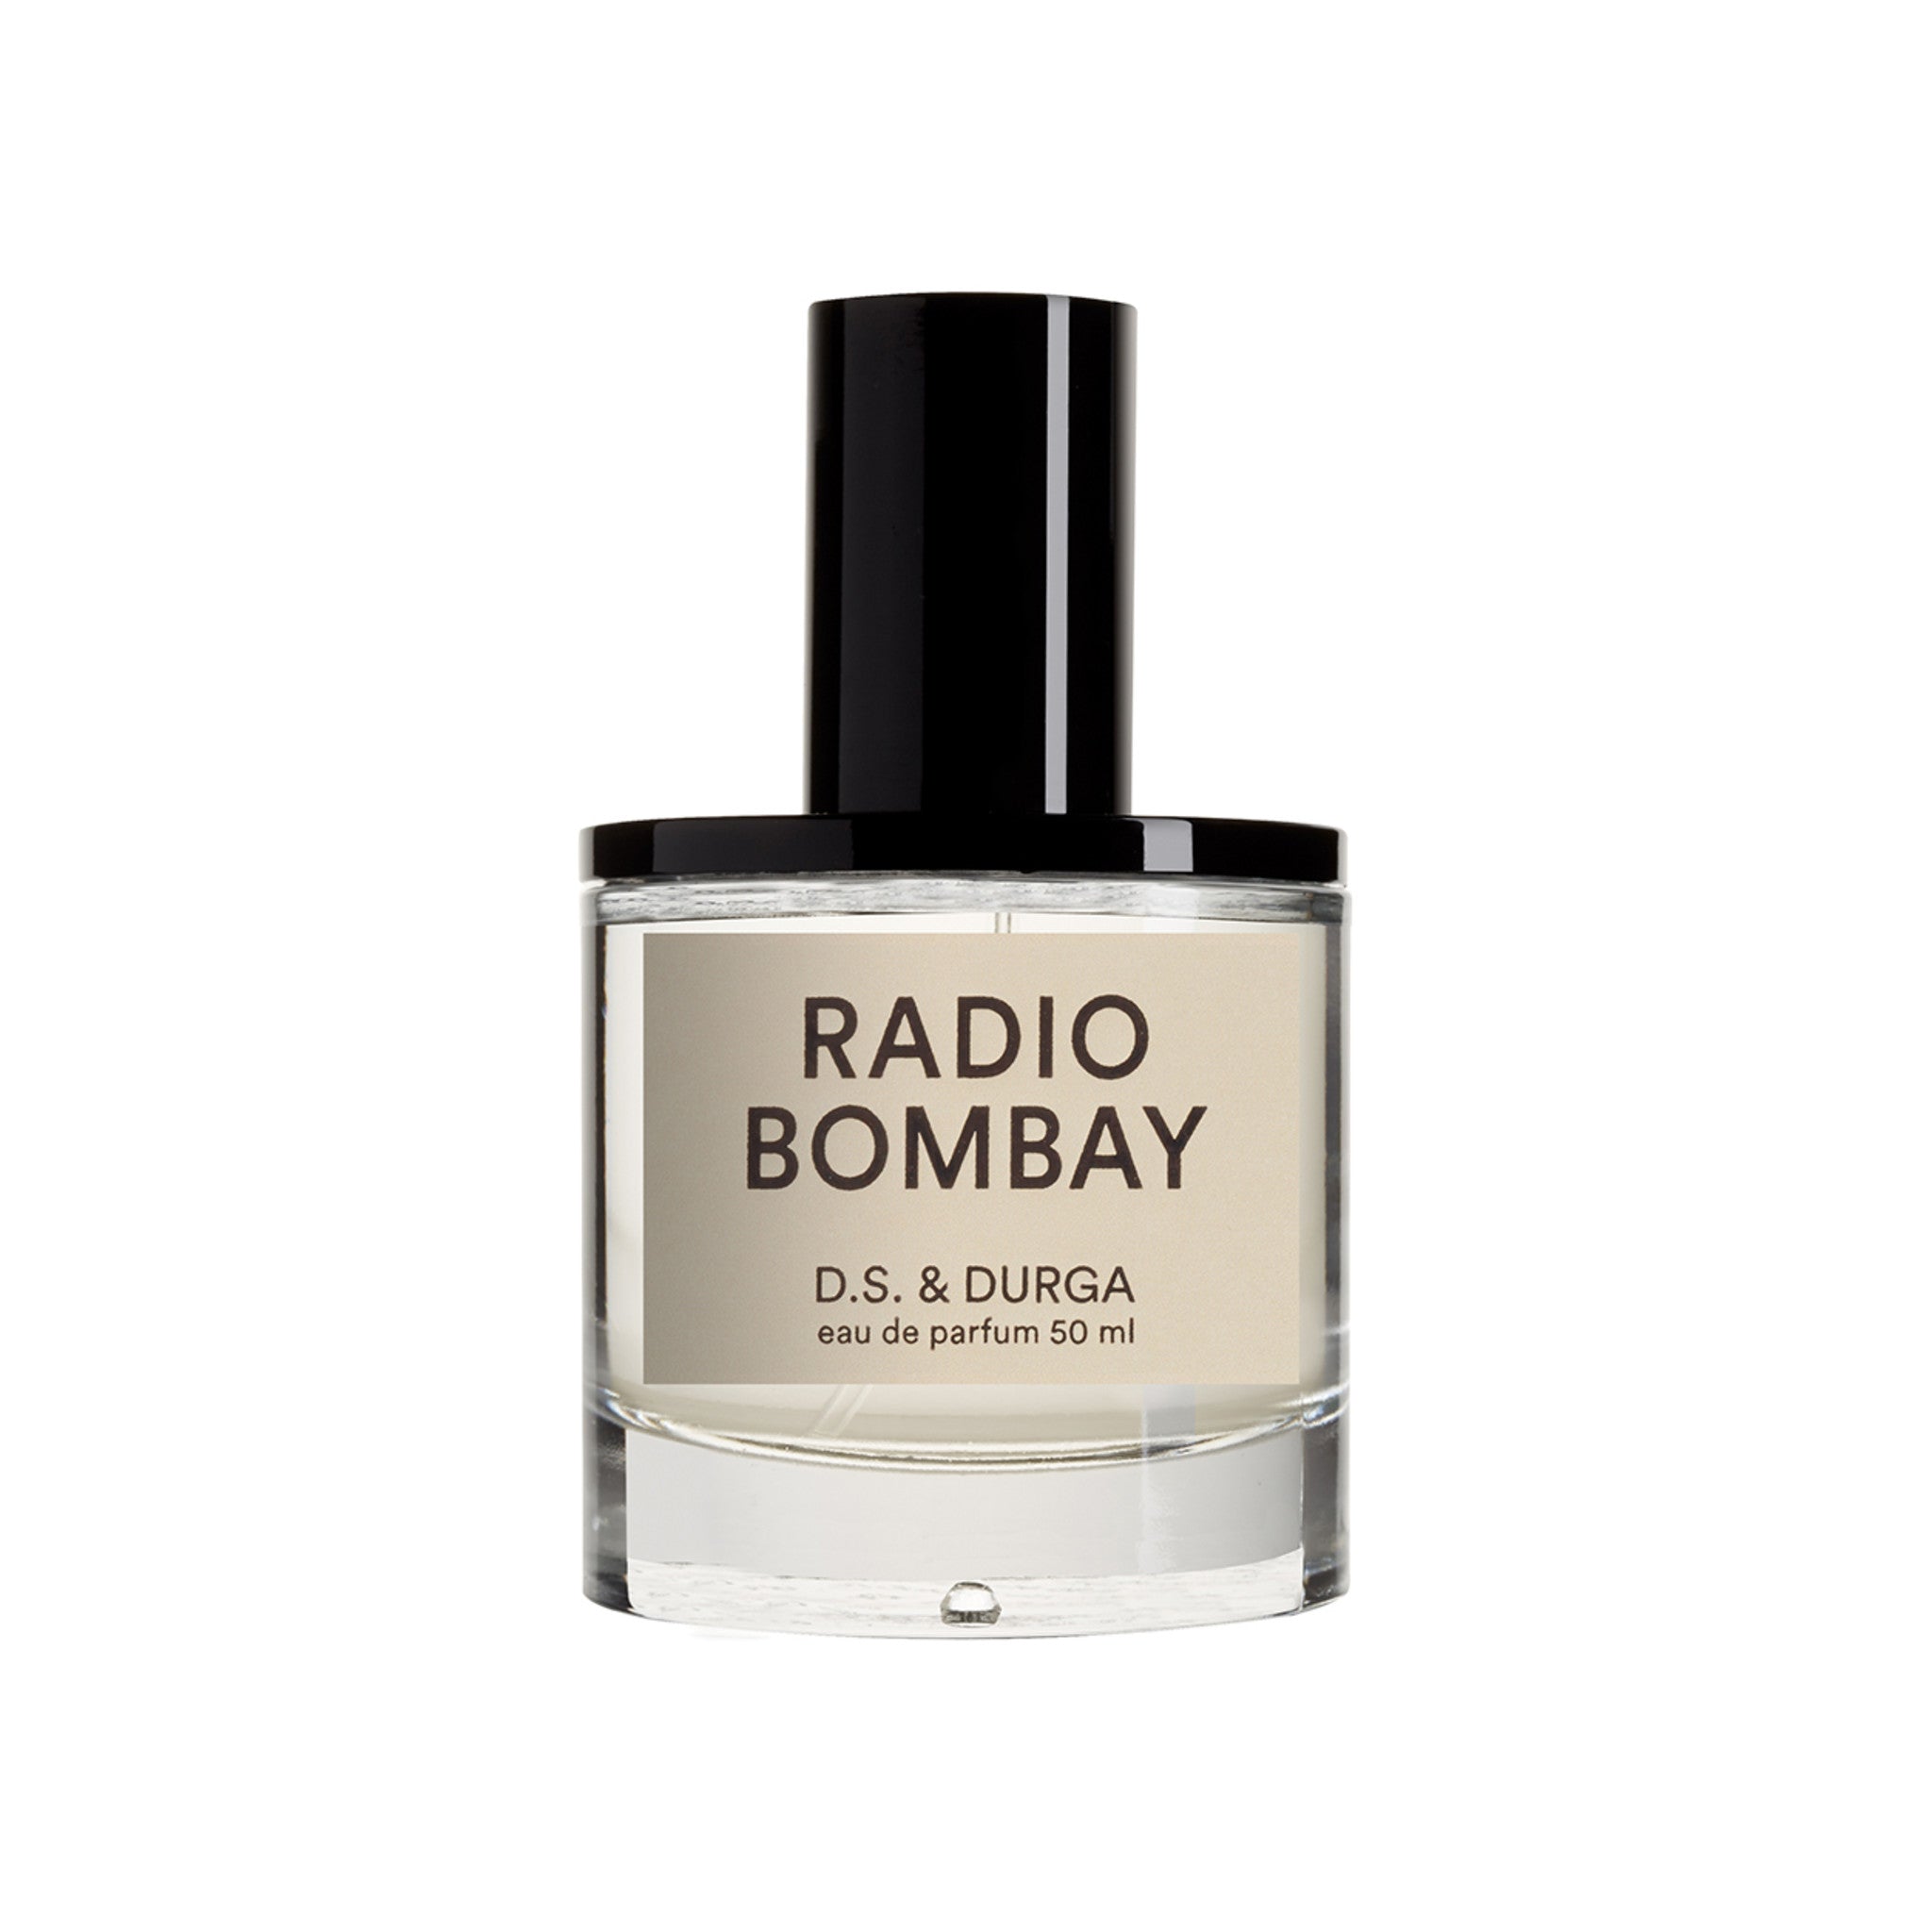 D.S. & Durga Radio Bombay Eau de Parfum main image.